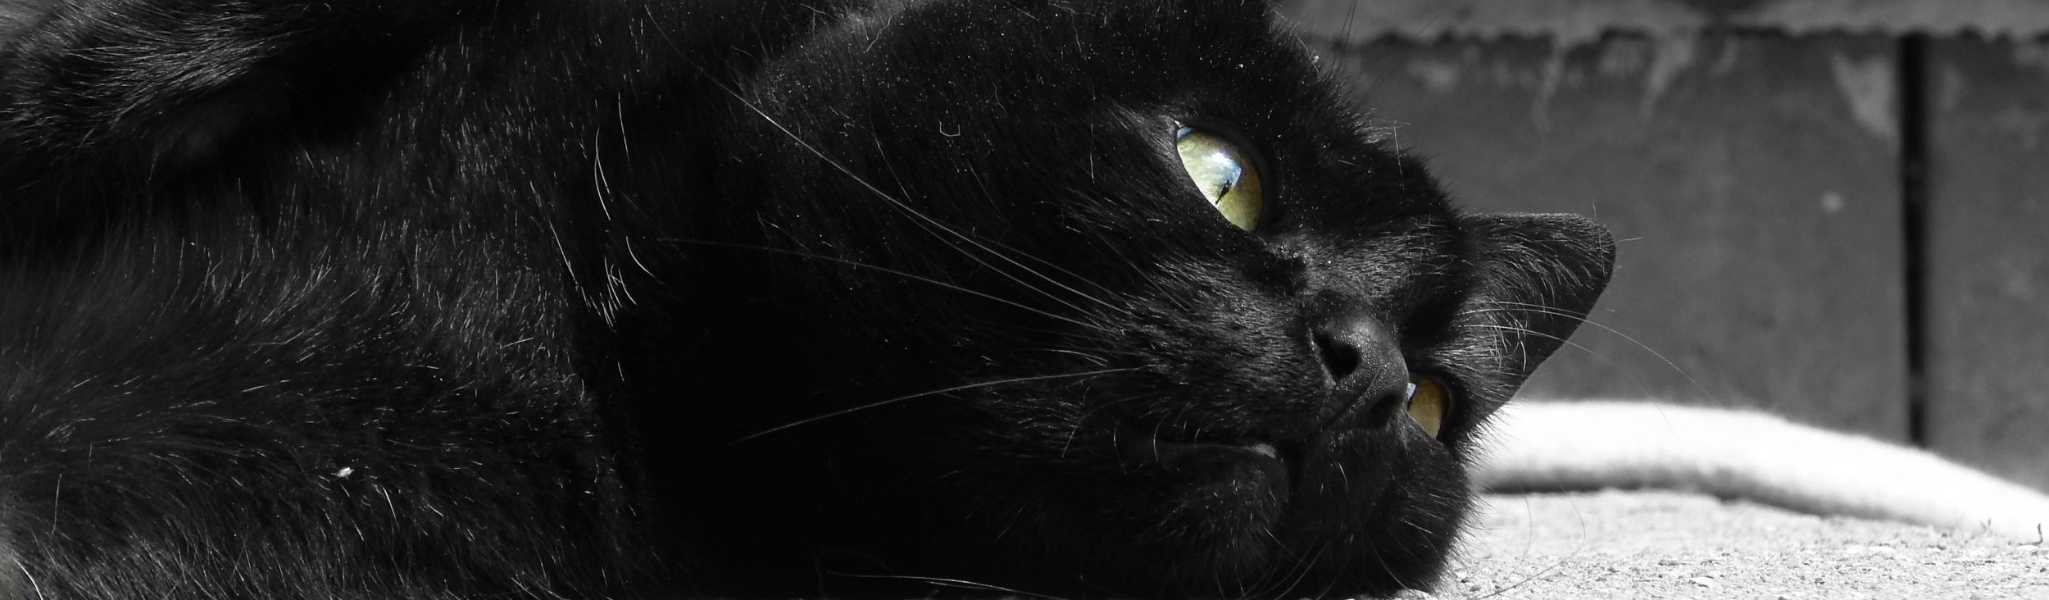 Soucis oculaires chez le chat : que faire si mon chat a des problèmes aux  yeux ?